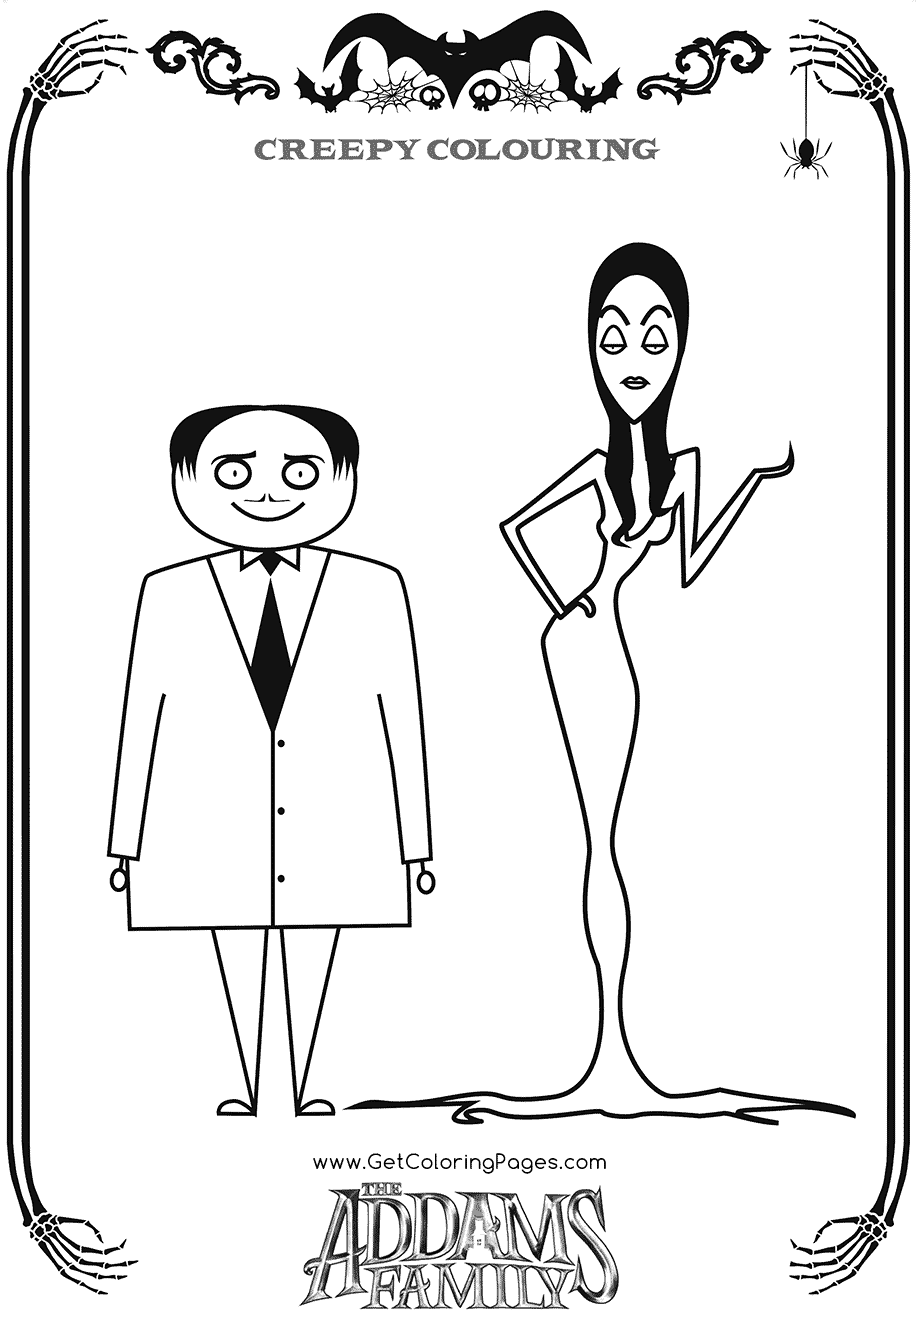 Gomez und Morticia aus The Addams Family